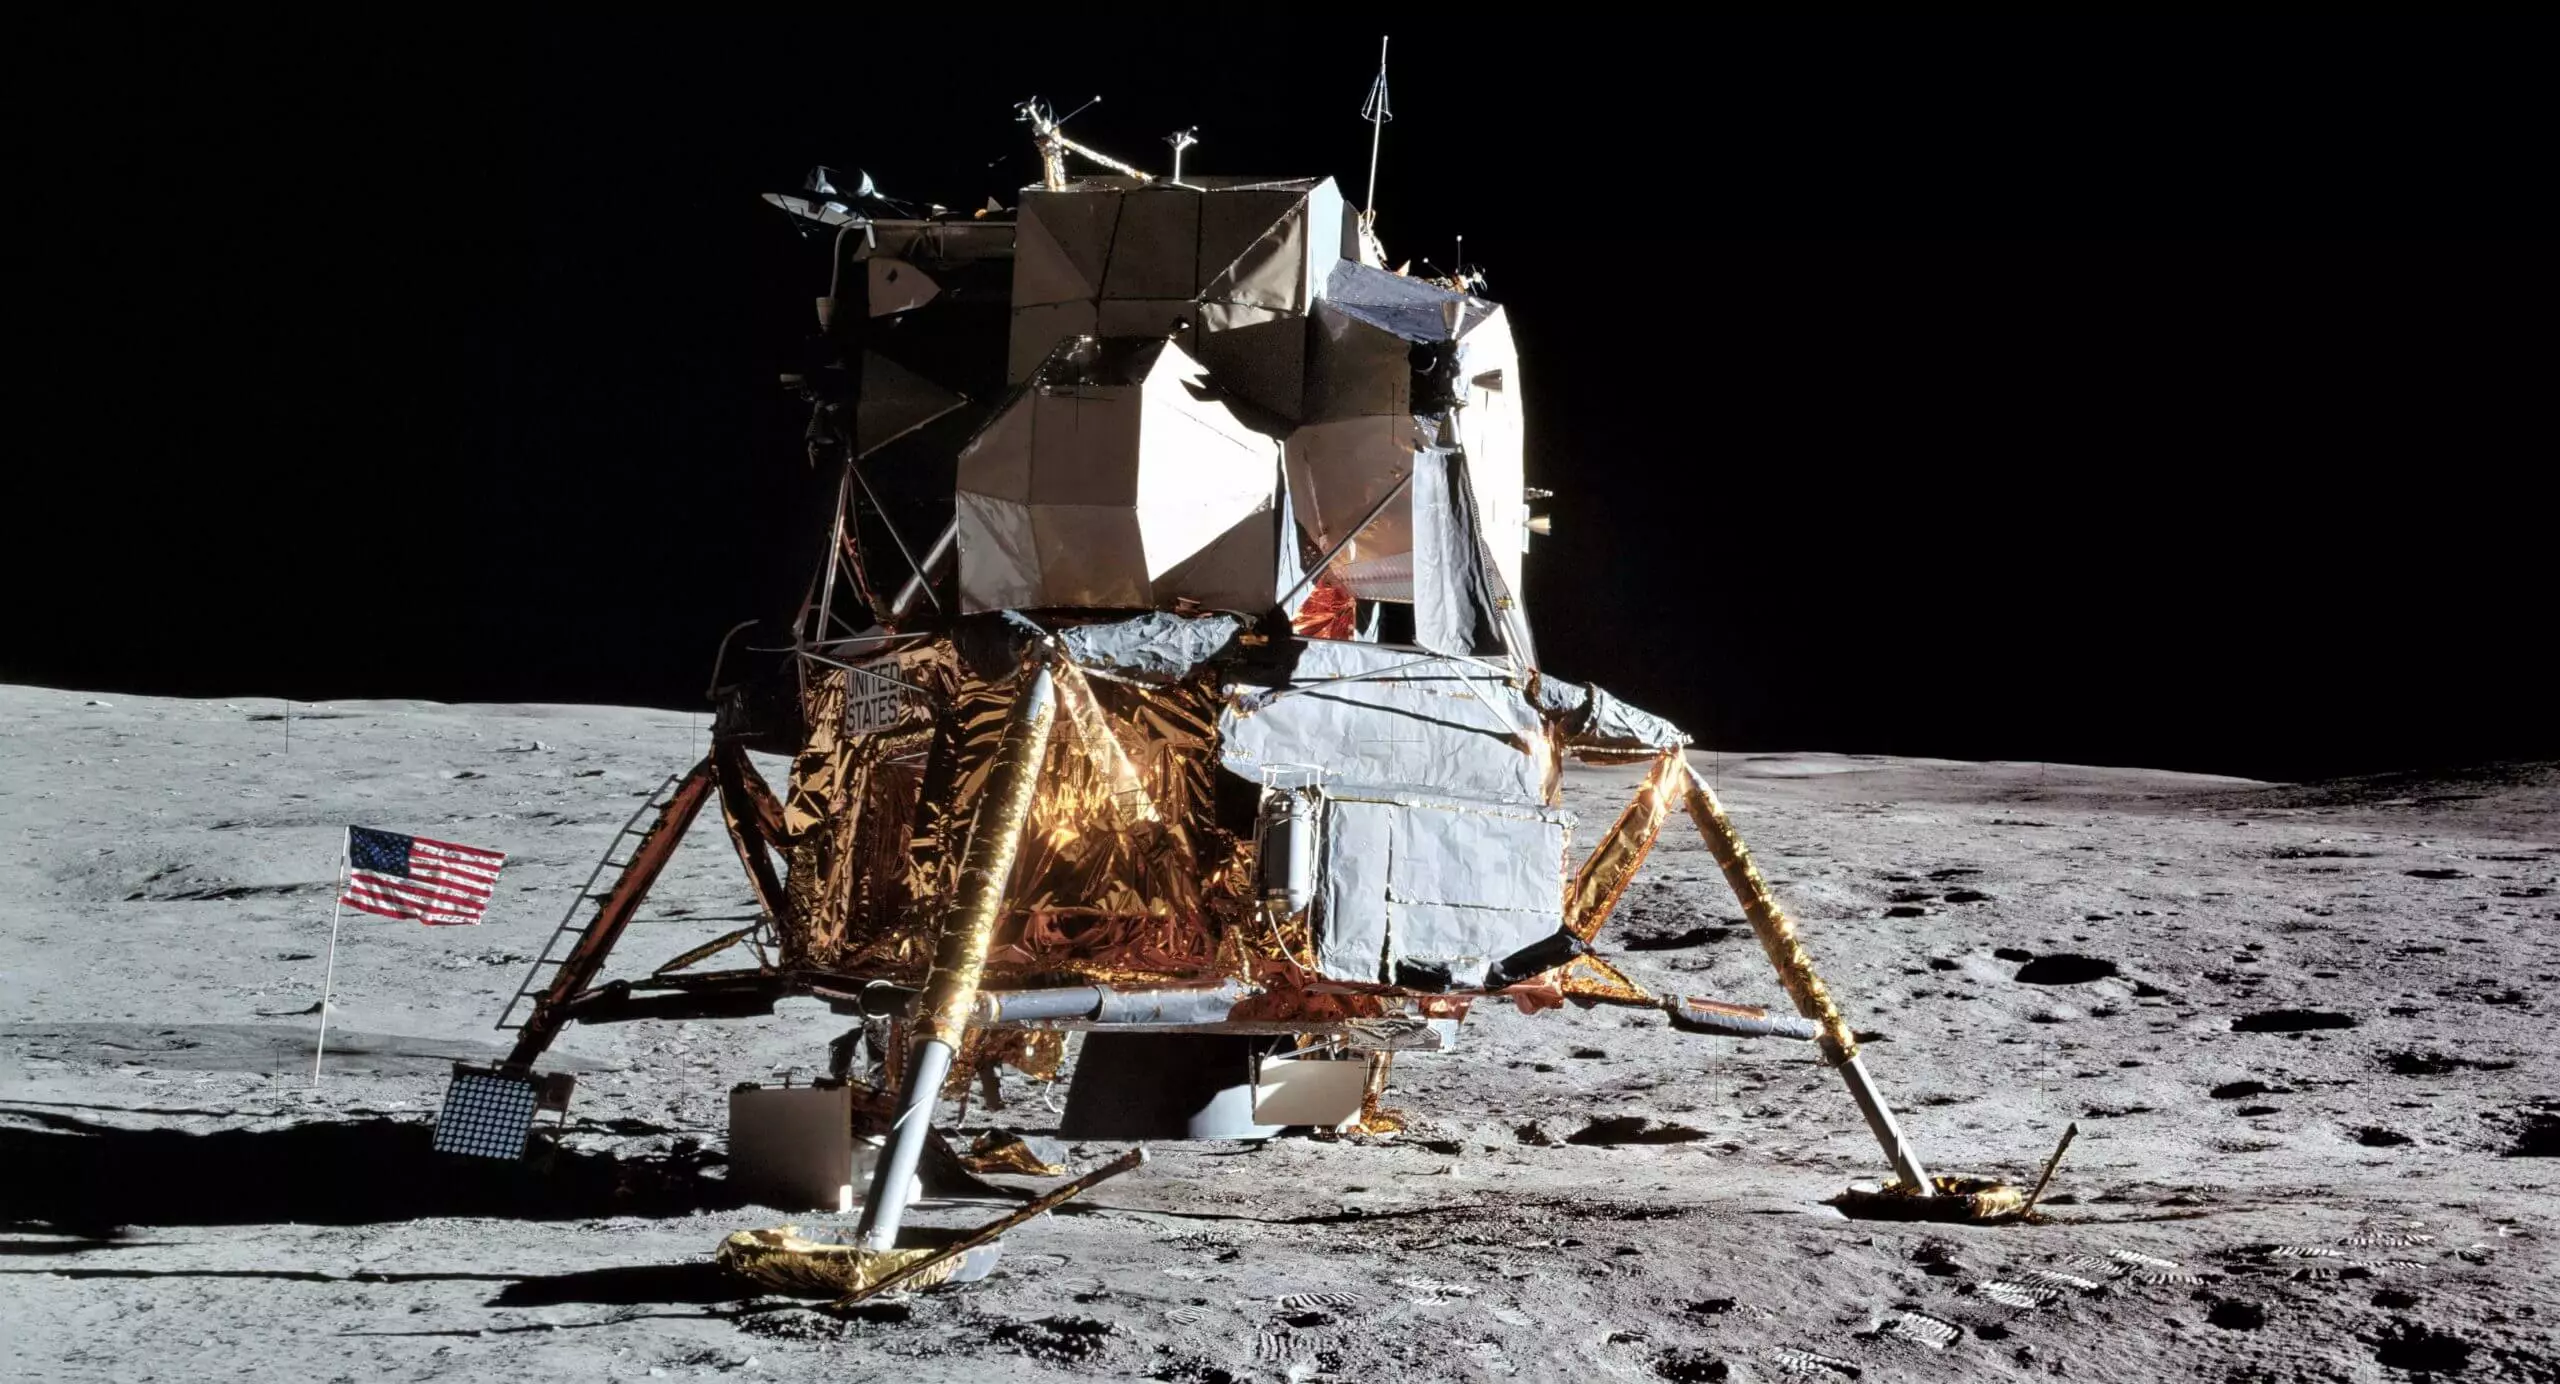 Ensaios da ciência védica TOVP: pousamos na lua?